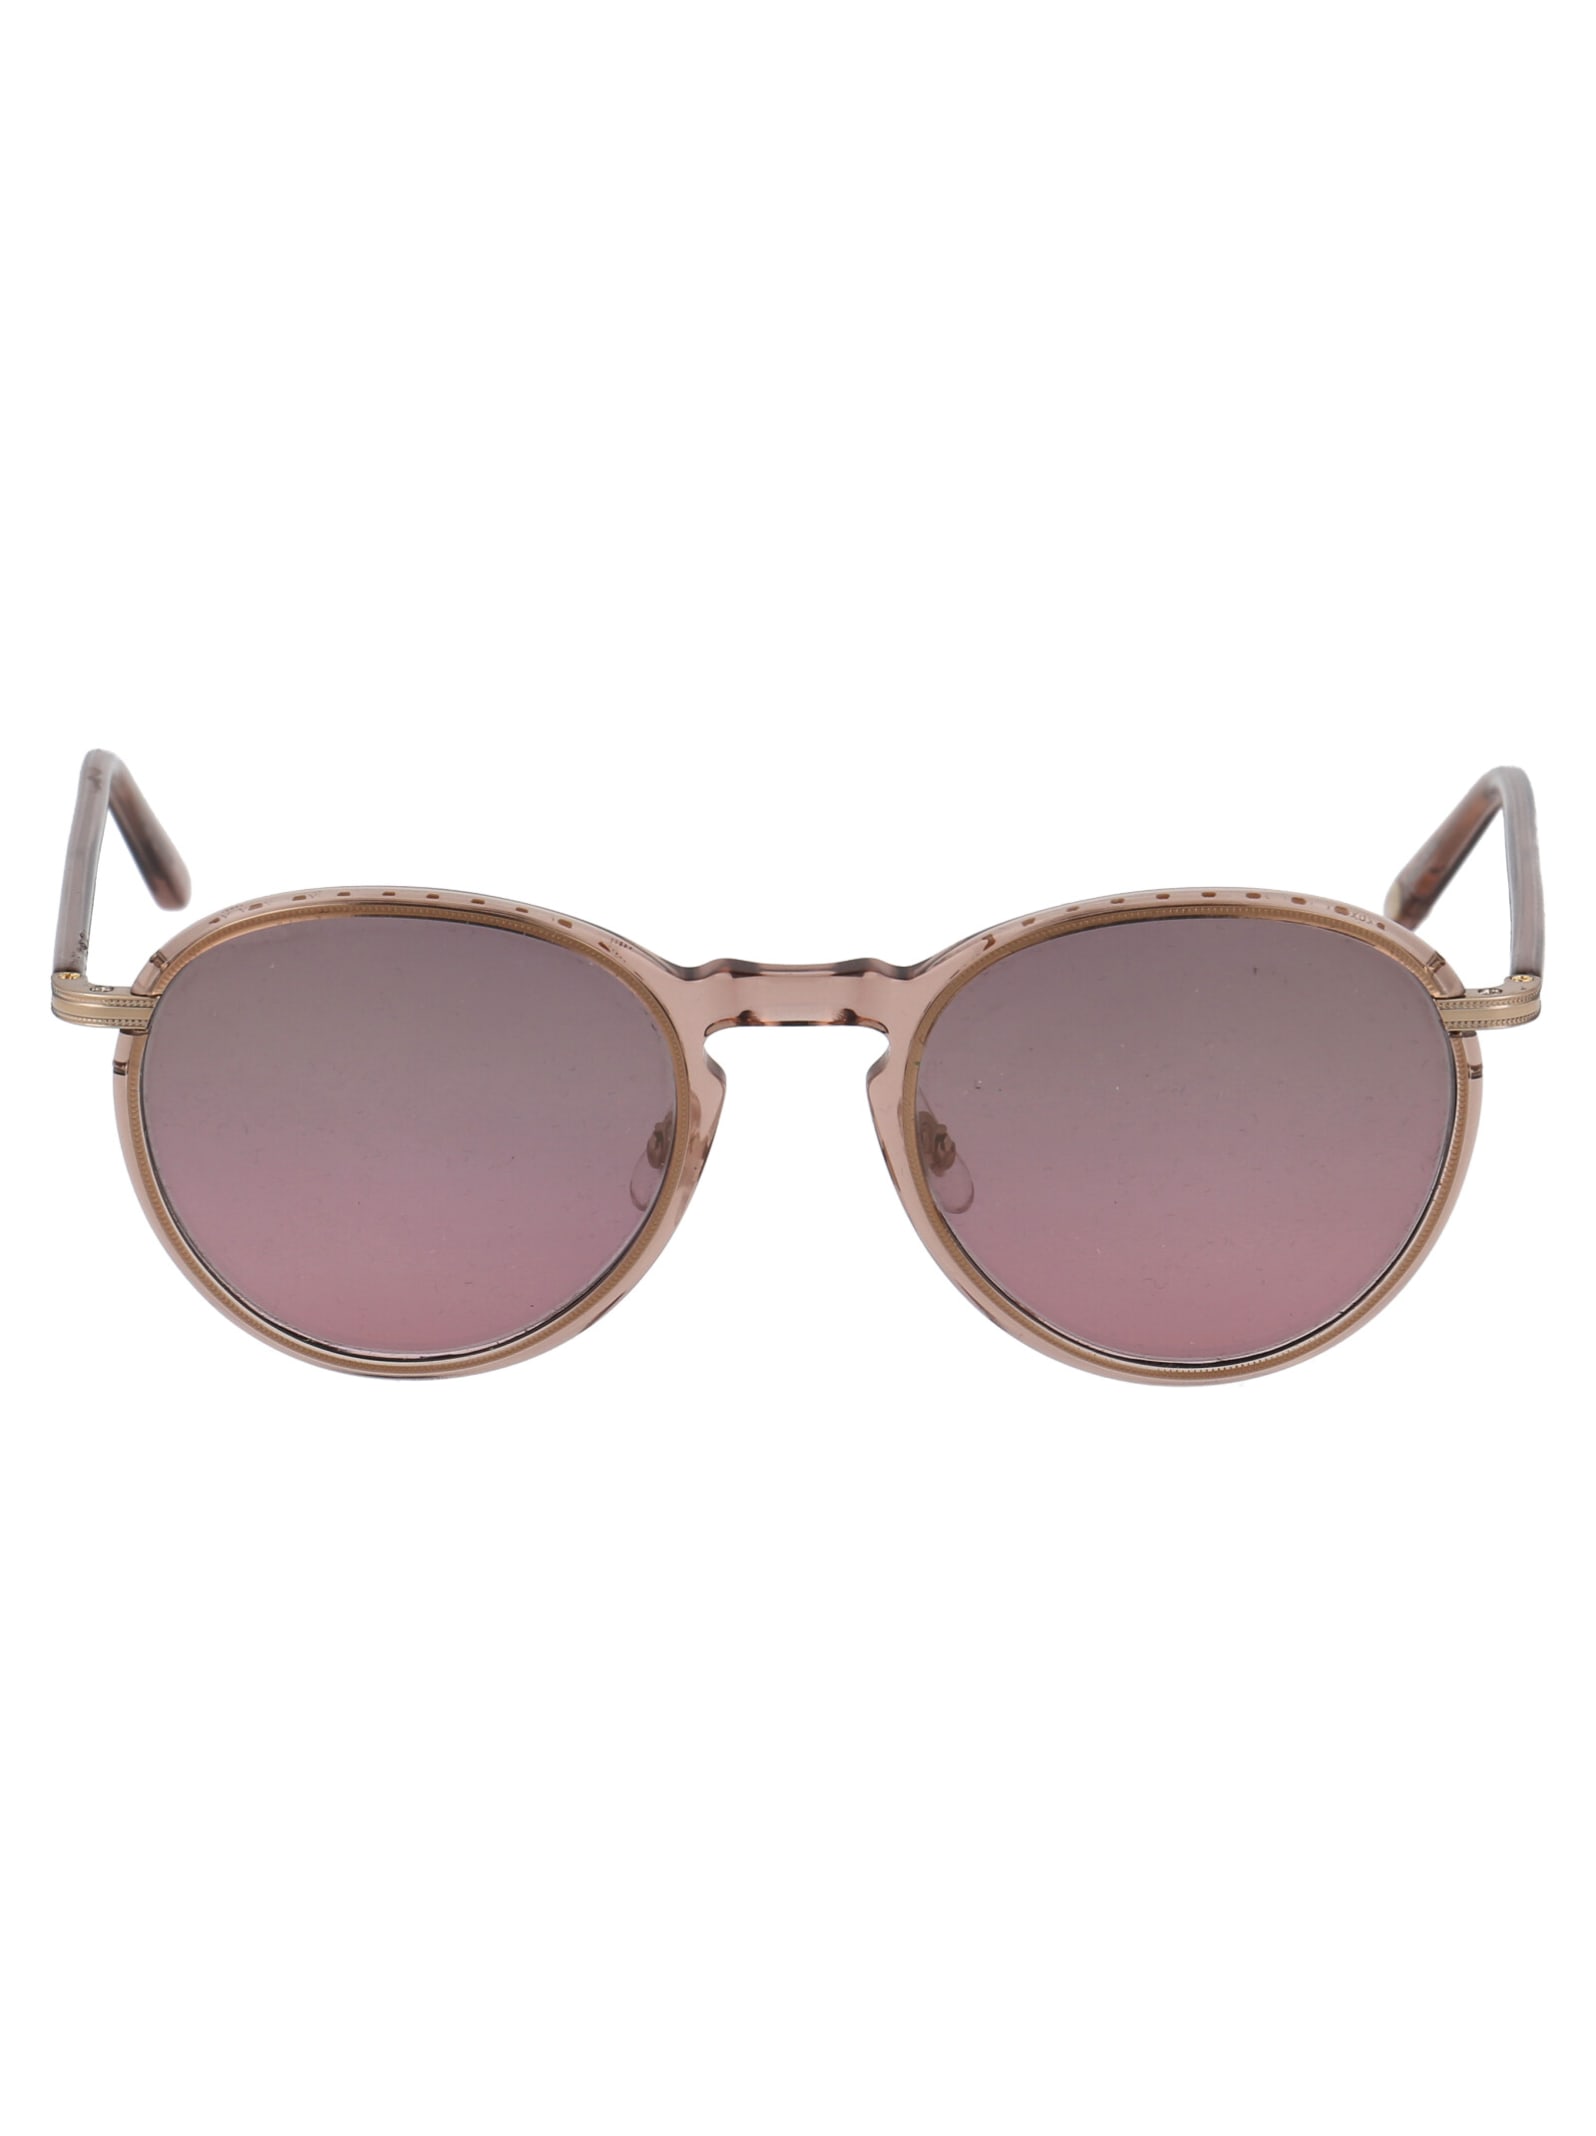 Garrett Leight Horizon Sunglasses In Desert Rose